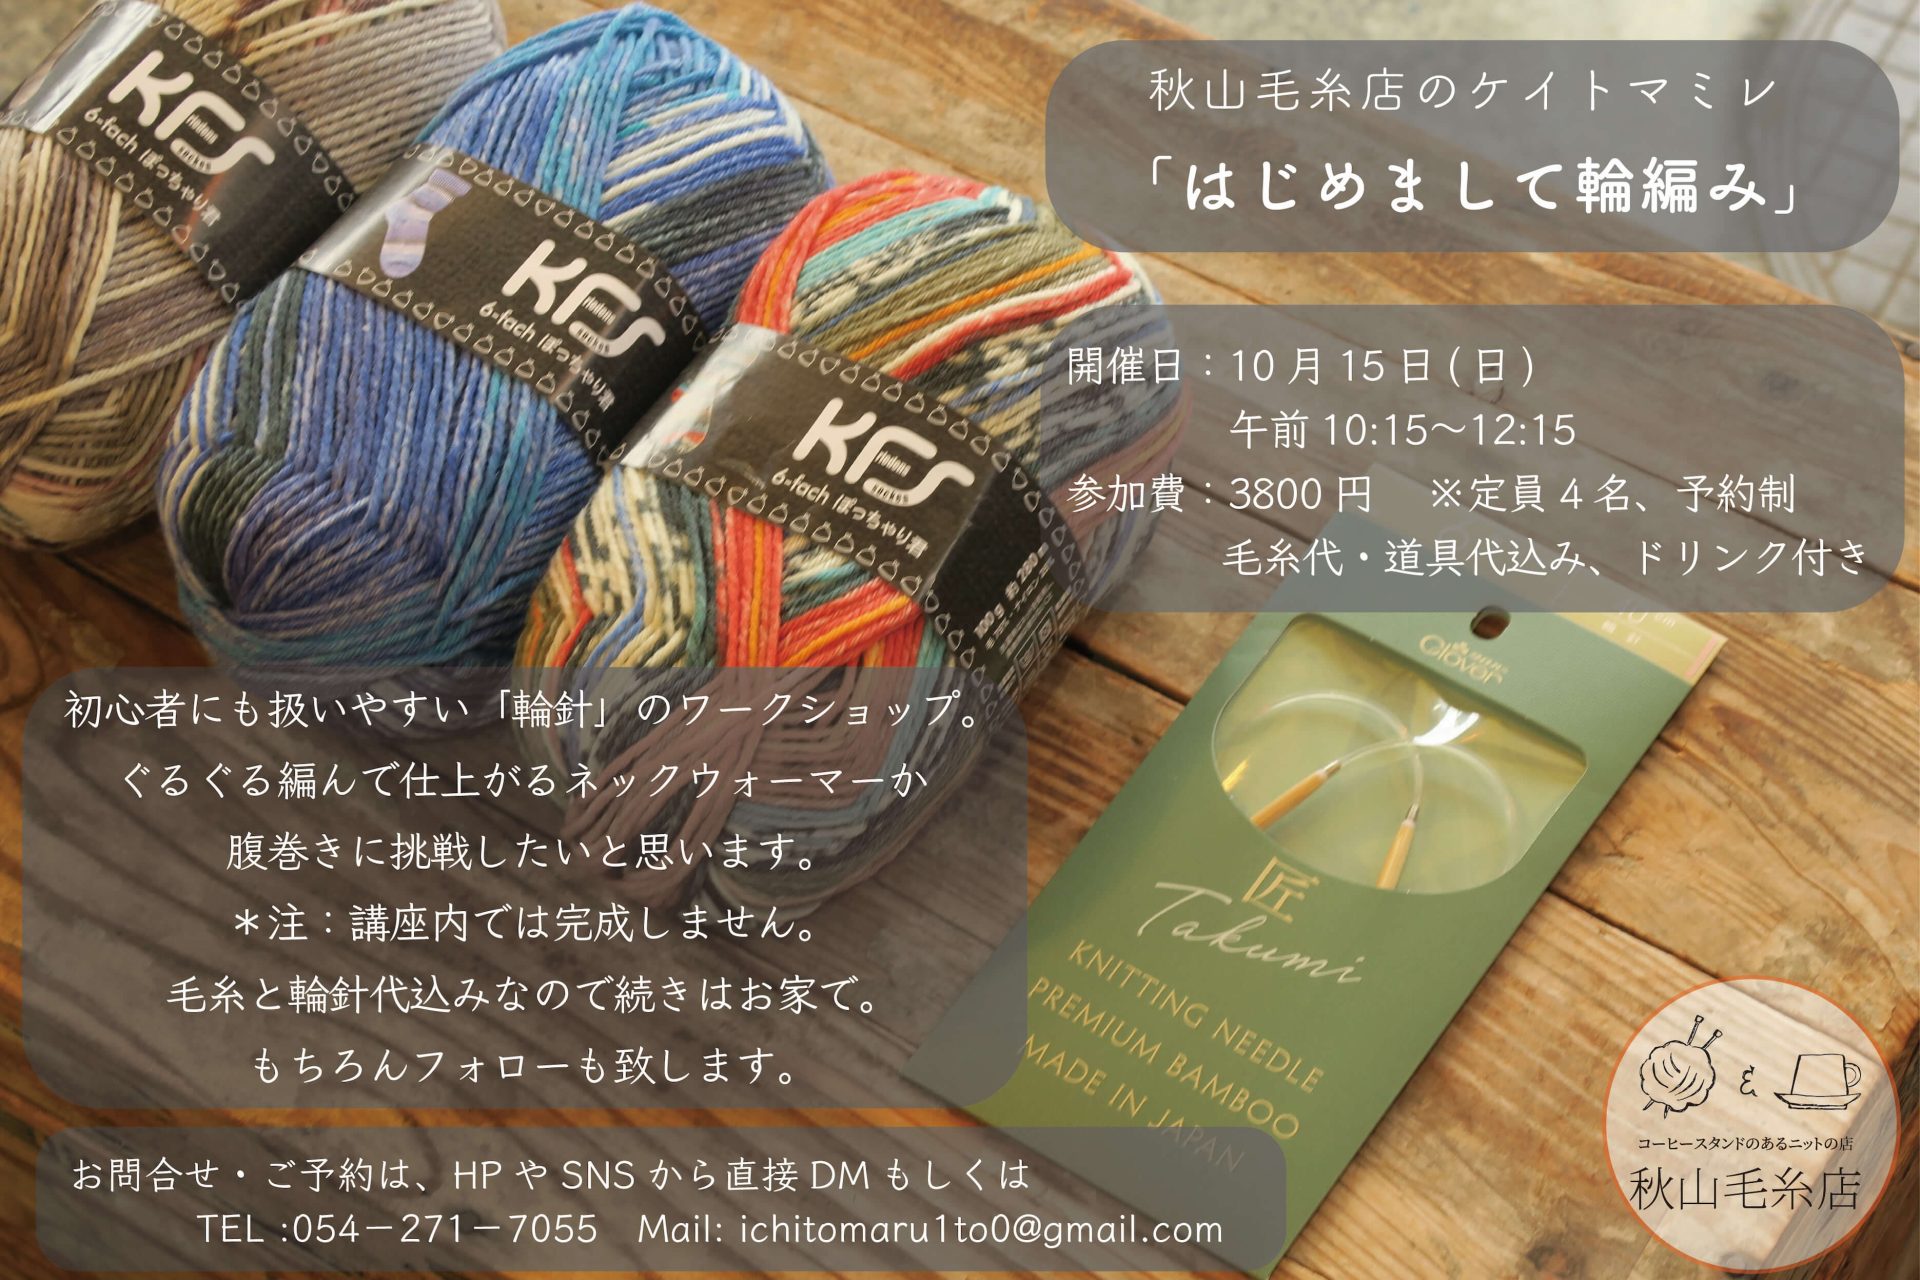 【WS終了】秋山毛糸店のケイトマミレ「はじめまして輪編み」